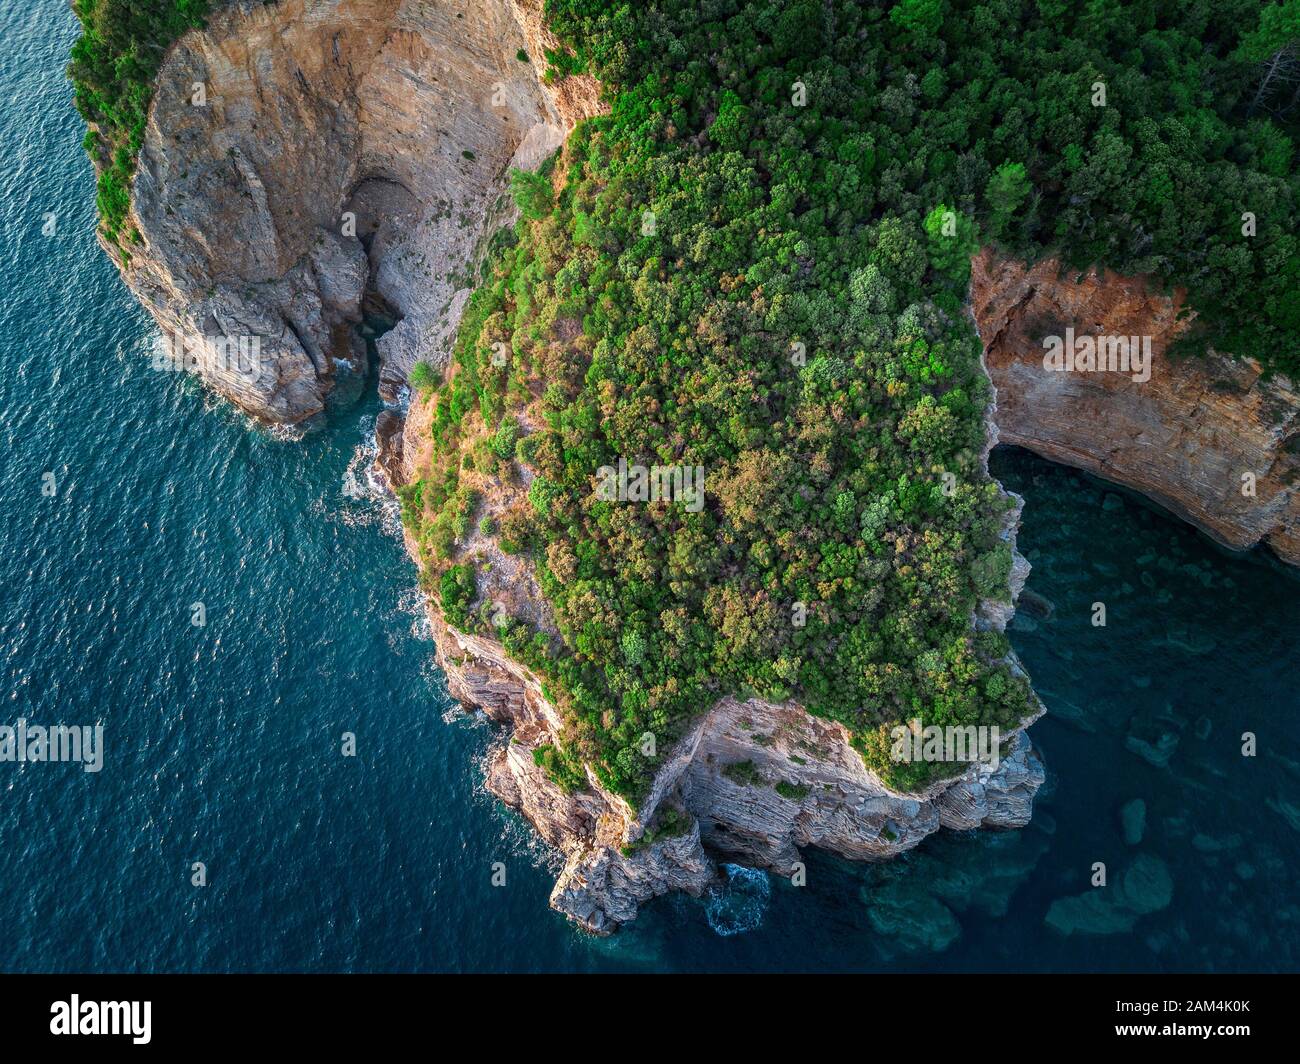 Vue aérienne d'une falaise abrupte, la nature préservée de la côte du Monténégro. Mer de grottes et de gorges remplaçant sur la côte Méditerranéenne Banque D'Images